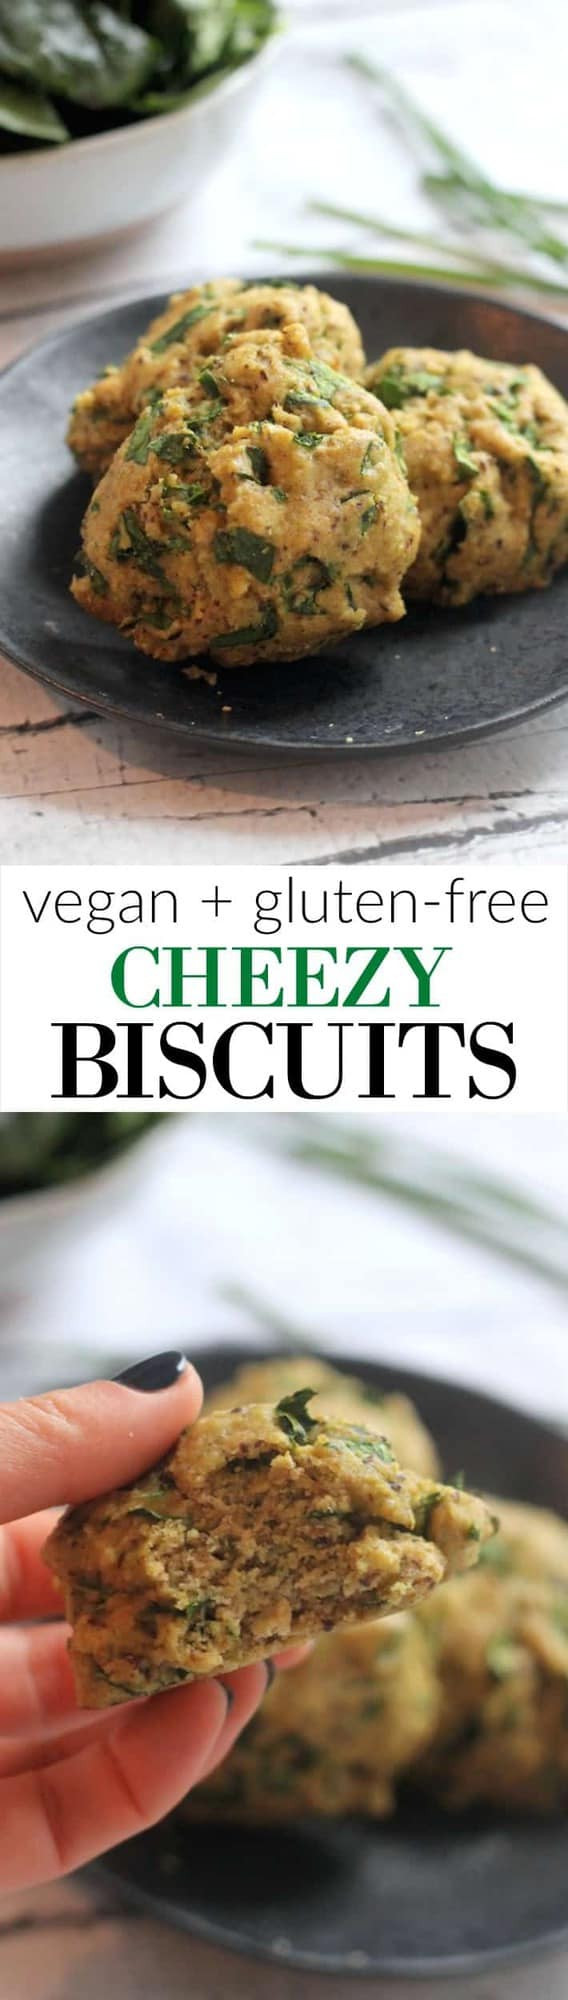 Vegan Biscuit Brands
 Cheezy Vegan Biscuits Hummusapien